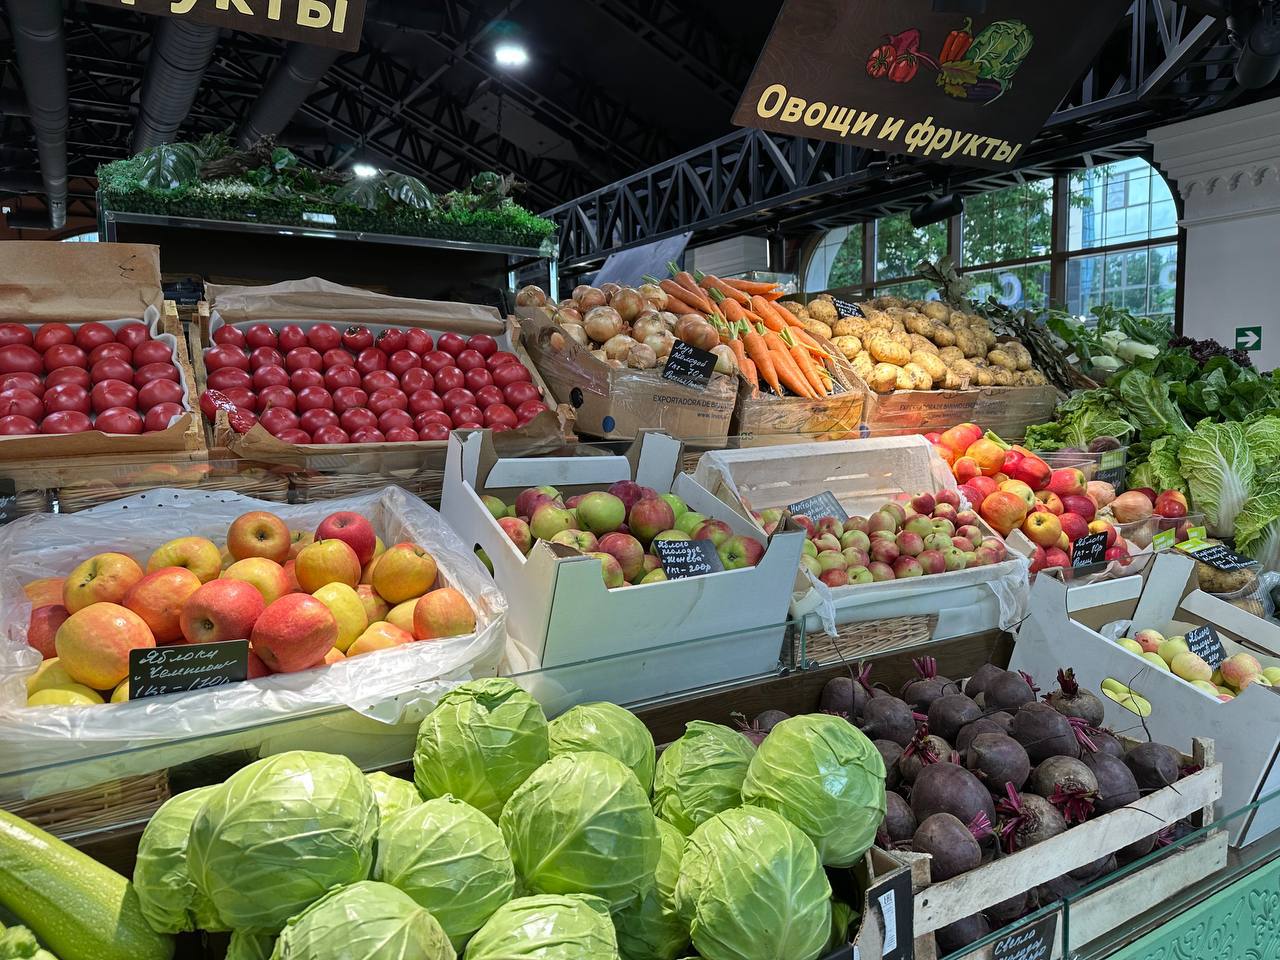 Вопреки сезонности стоимость овощей и фруктов в России увеличивается.   С начала года в рознице цены на яблоки выросли на 30% — до 159,8 рубля за 1 кг, на свеклу на 92,3% — до 70 руб./кг, на морковь на 62,8% — до 70 руб./кг, сообщили в «Руспродсоюзе».   Эти данные фактически совпадают с официальными цифрами Росстата, который также фиксирует удорожание и других овощных культур: картофеля — на 82,4%  июнь к декабрю – началу января , капусты — на 35%, лука — на 32%. Изменится ли этот тренд, можно будет сказать только в августе, считают в Центре макроэкономического анализа и краткосрочного прогнозирования. При этом в Ассоциации компаний розничной торговли отметили, что фактические цены в крупных торговых сетях сегодня ниже средних по стране, а их уменьшение может начаться уже в июле после первых поступлений нового урожая.